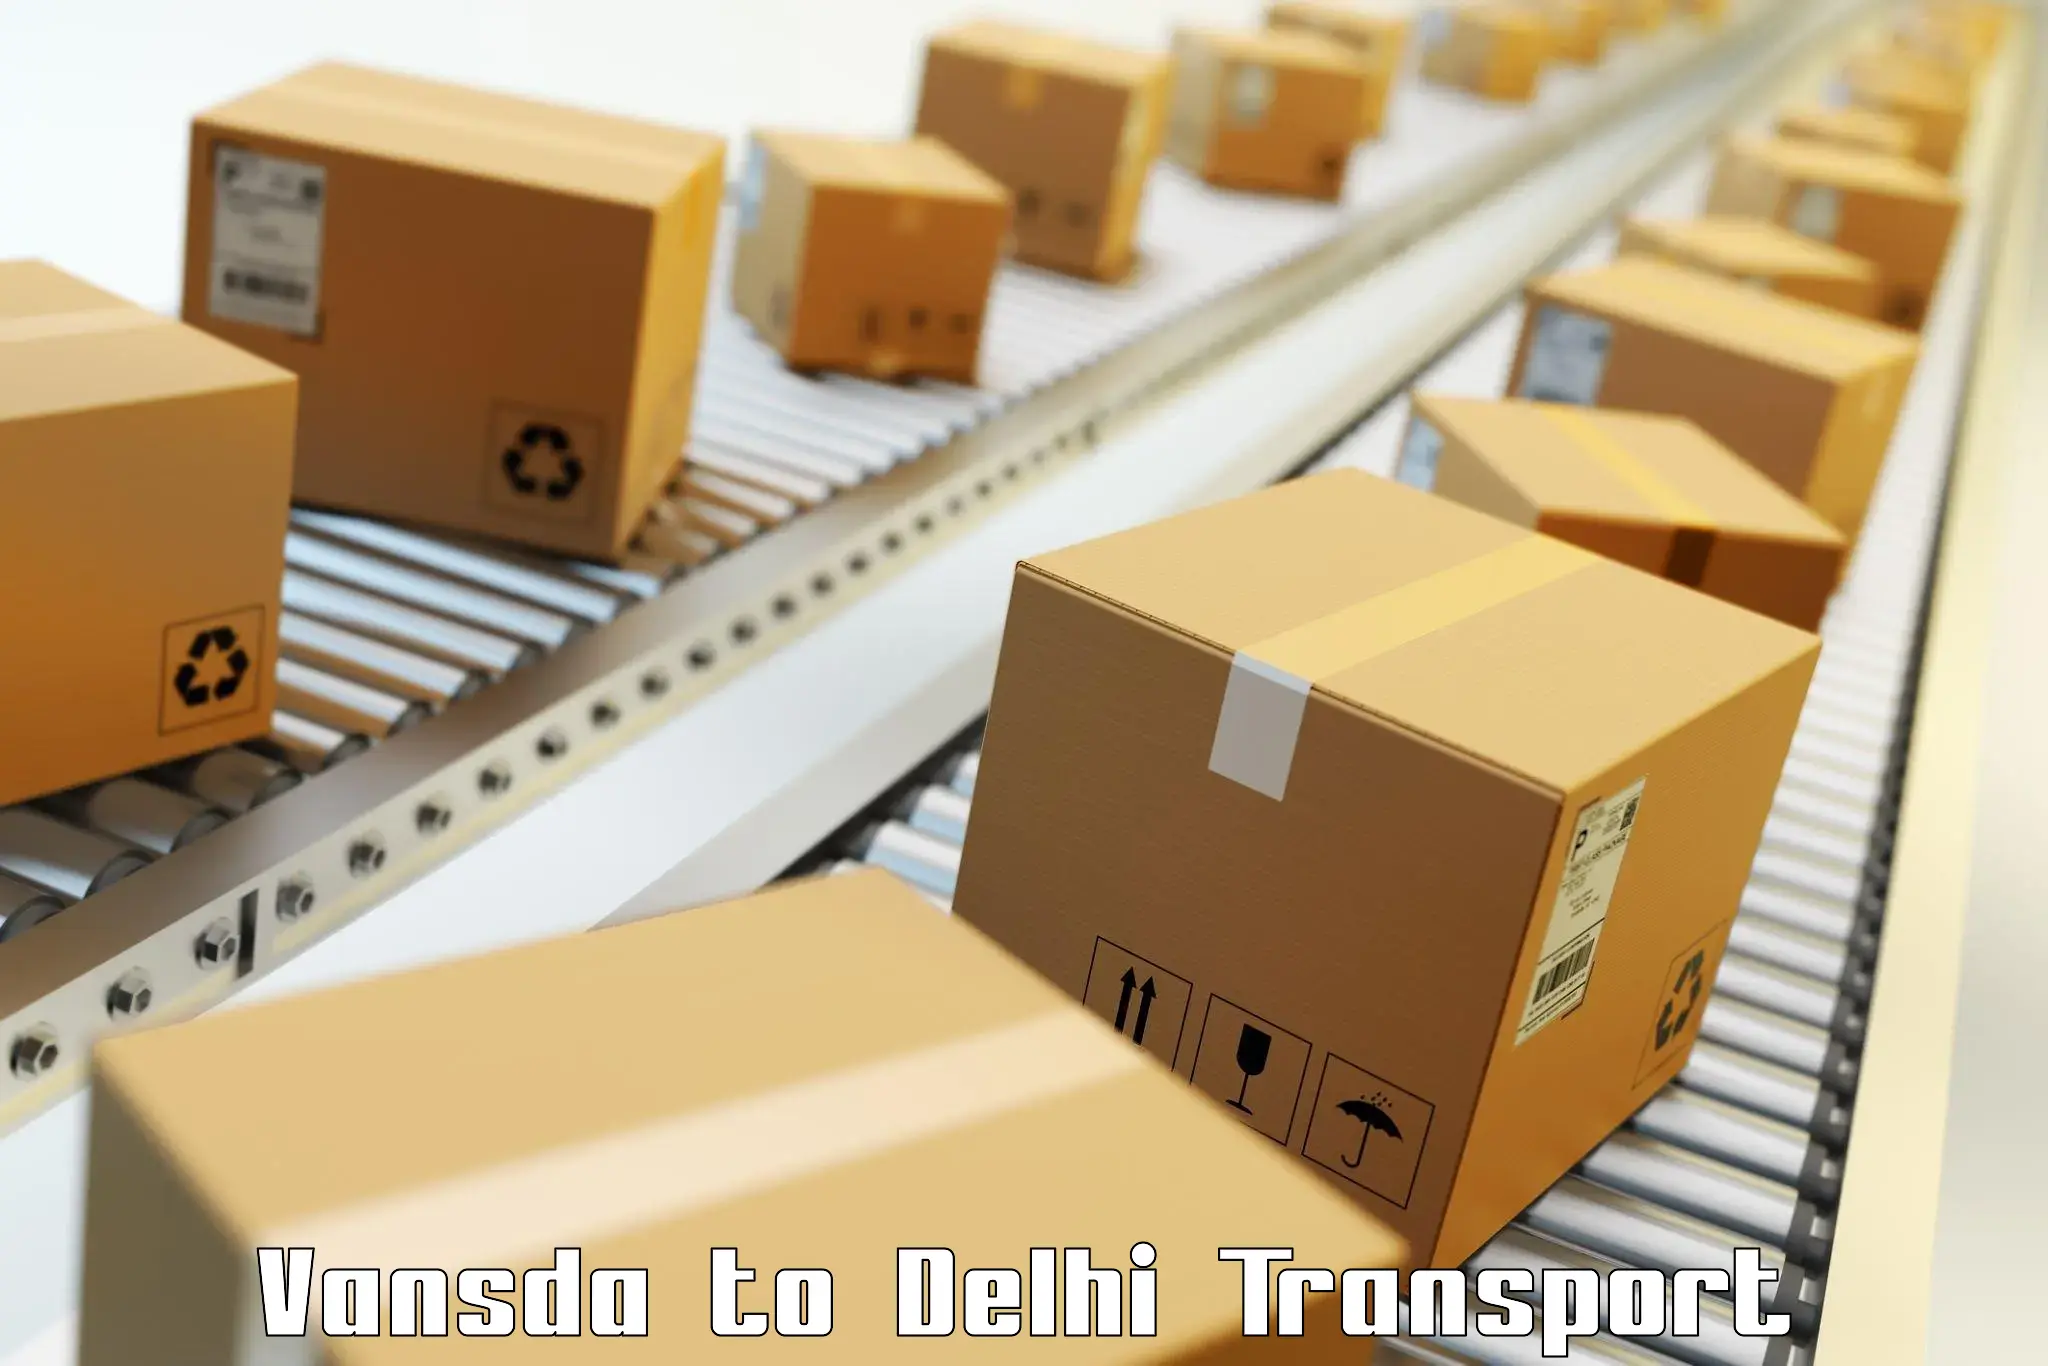 Cargo transportation services Vansda to Sarojini Nagar